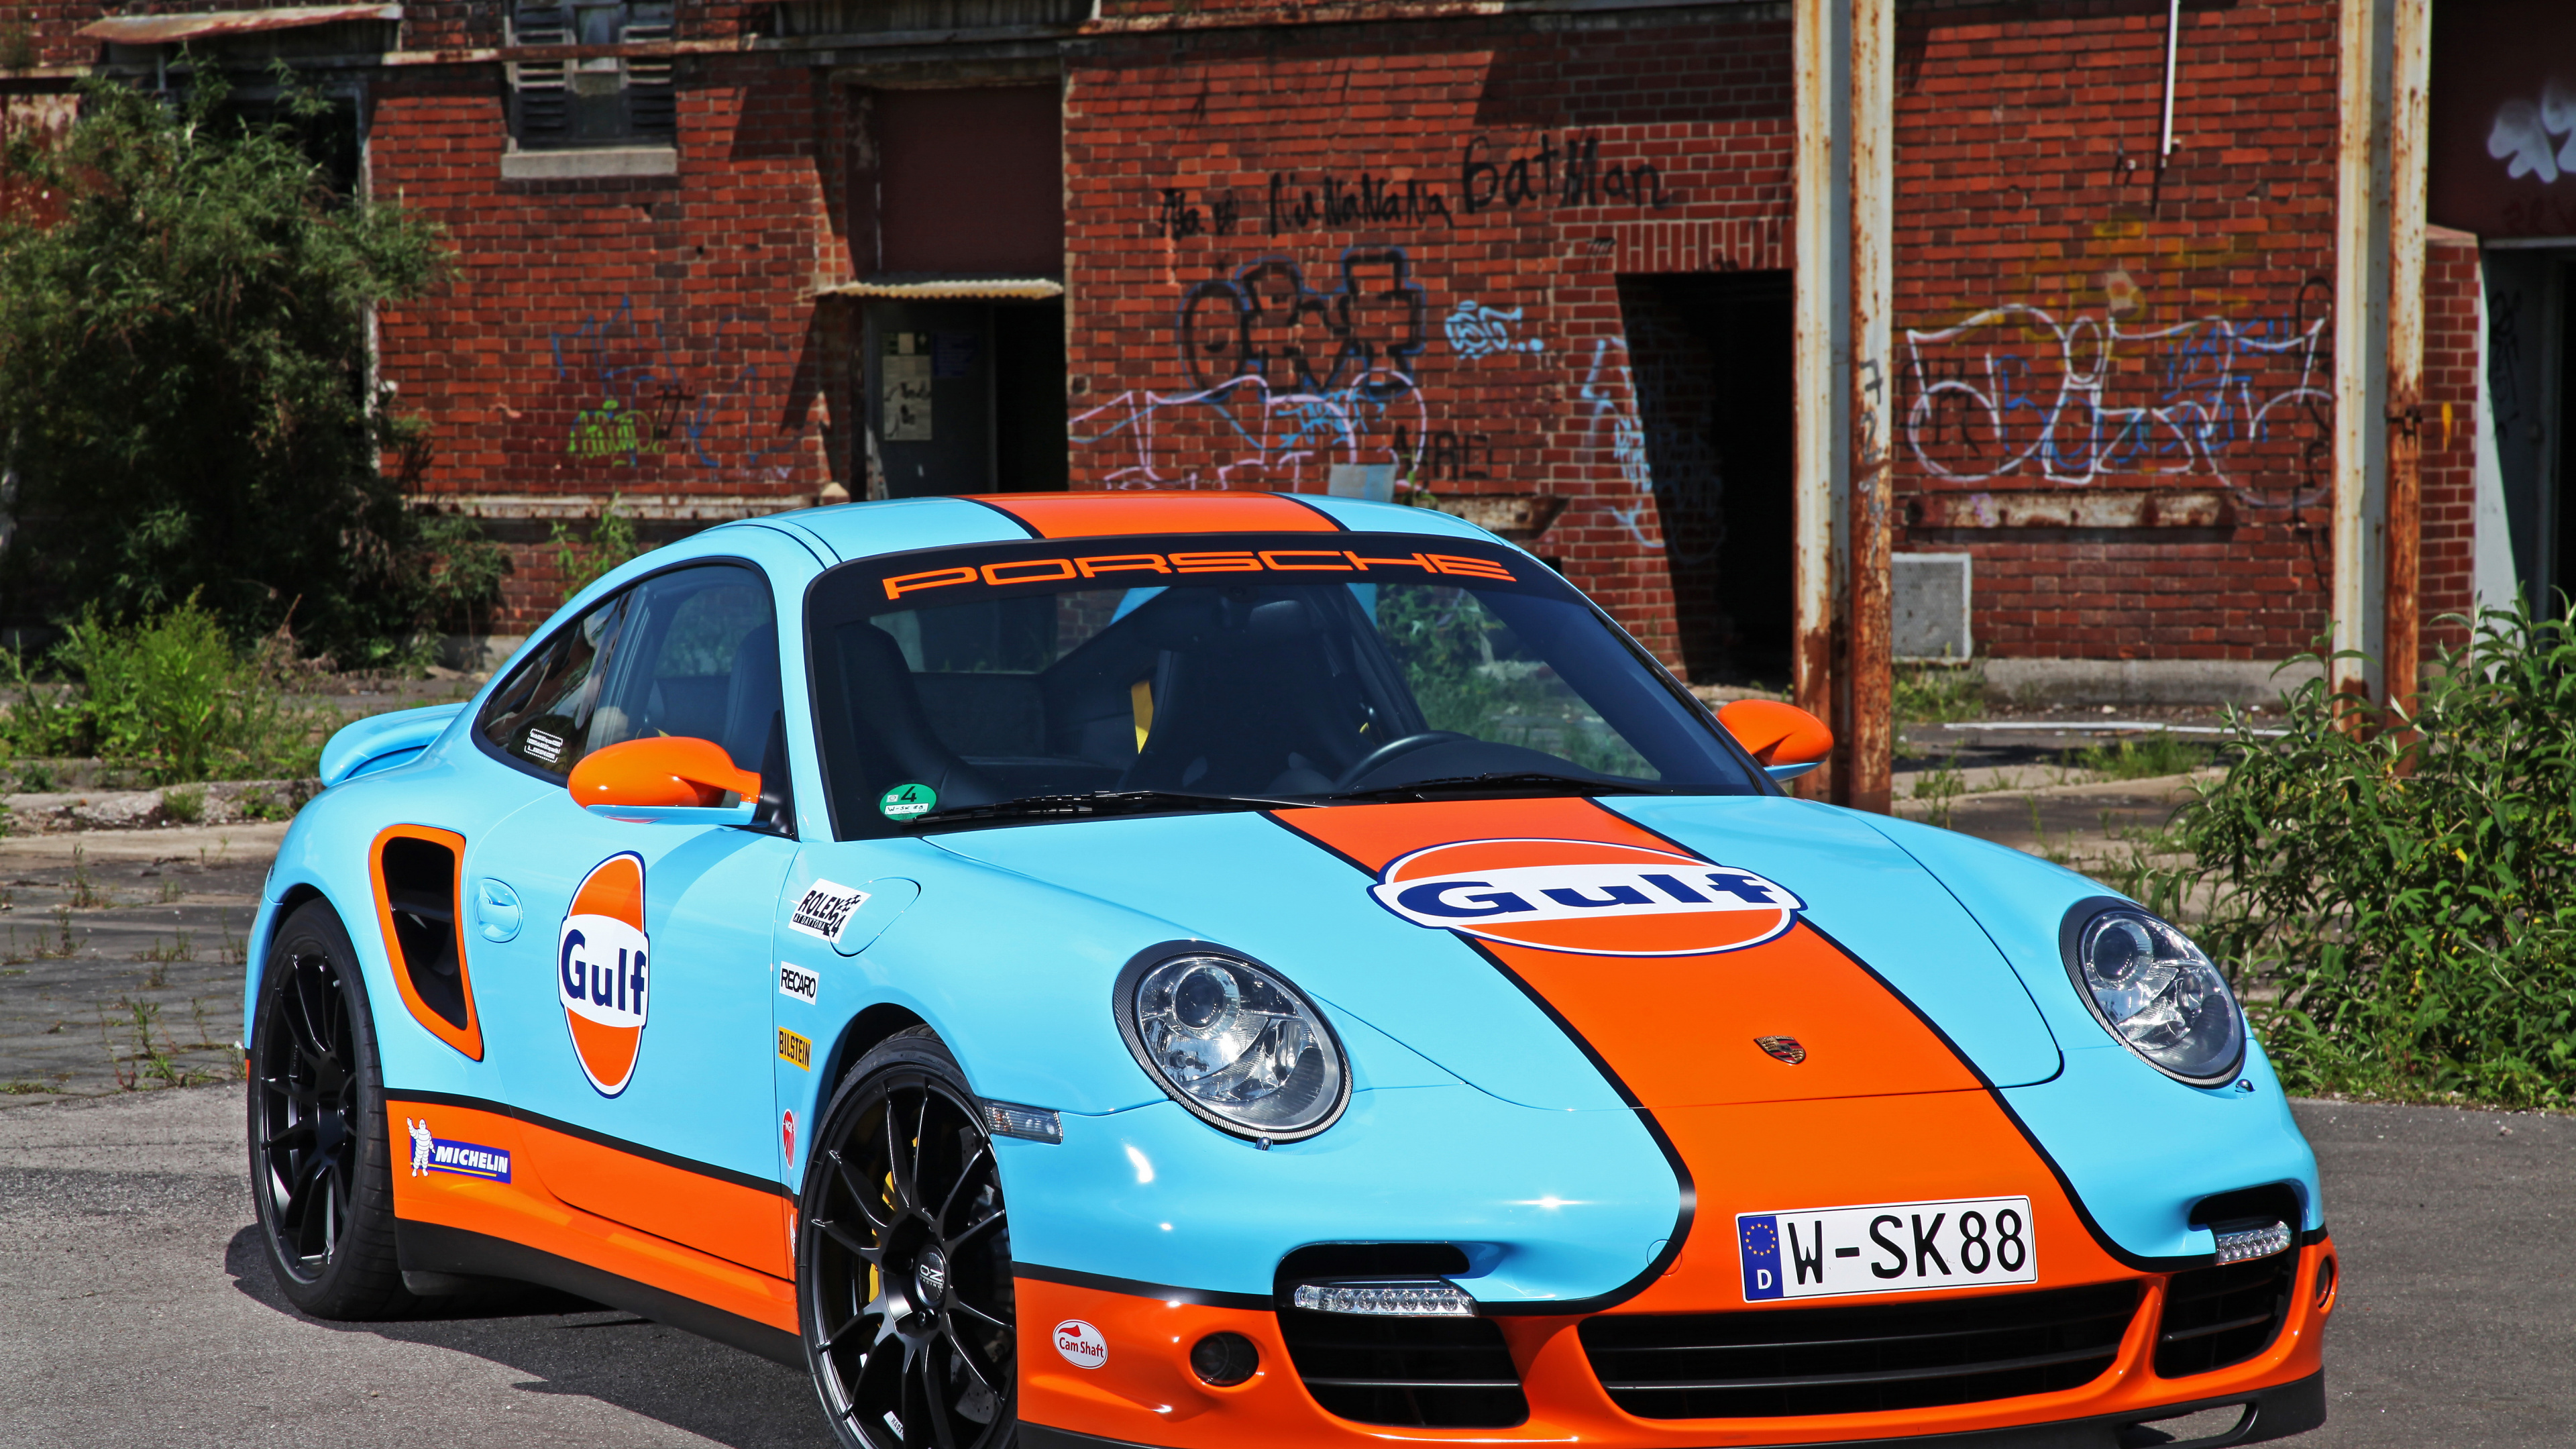 Porsche 911 Bleue et Blanche Garée Près D'un Immeuble en Briques Brunes Pendant la Journée. Wallpaper in 3840x2160 Resolution